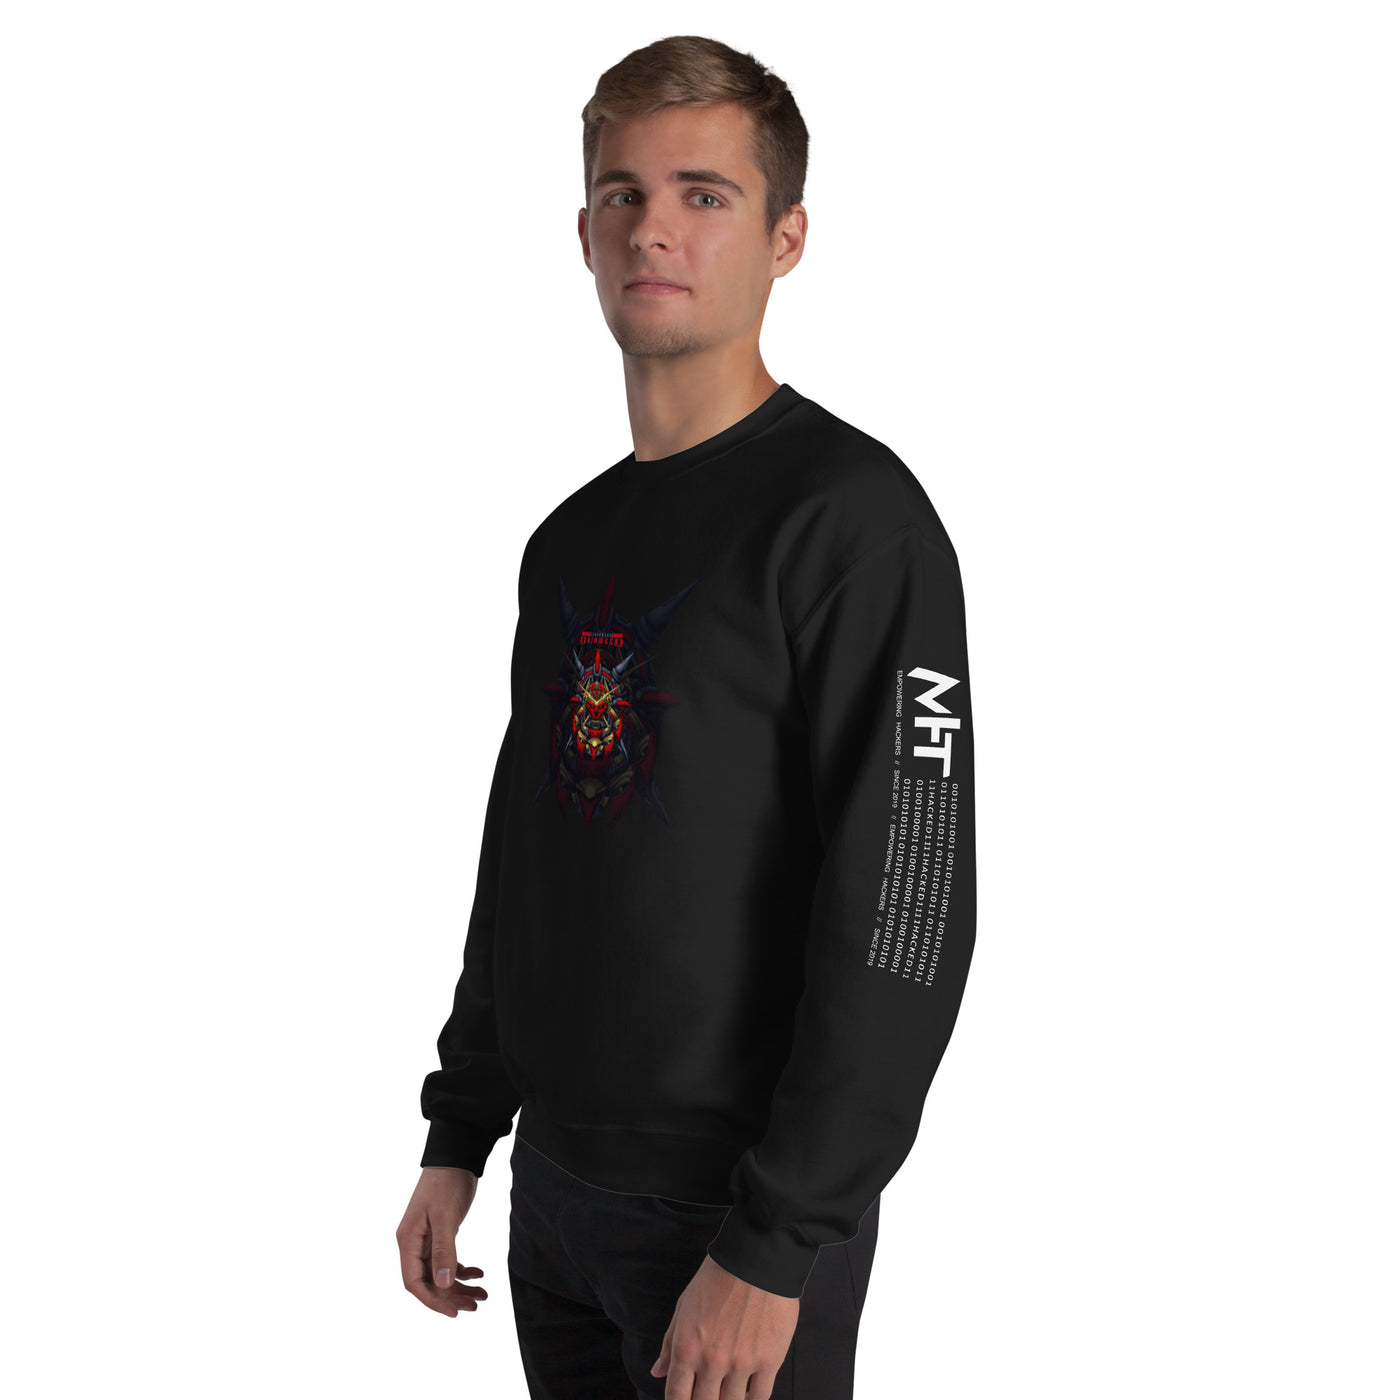 Cyberware Ronin Mecha - Unisex Sweatshirt